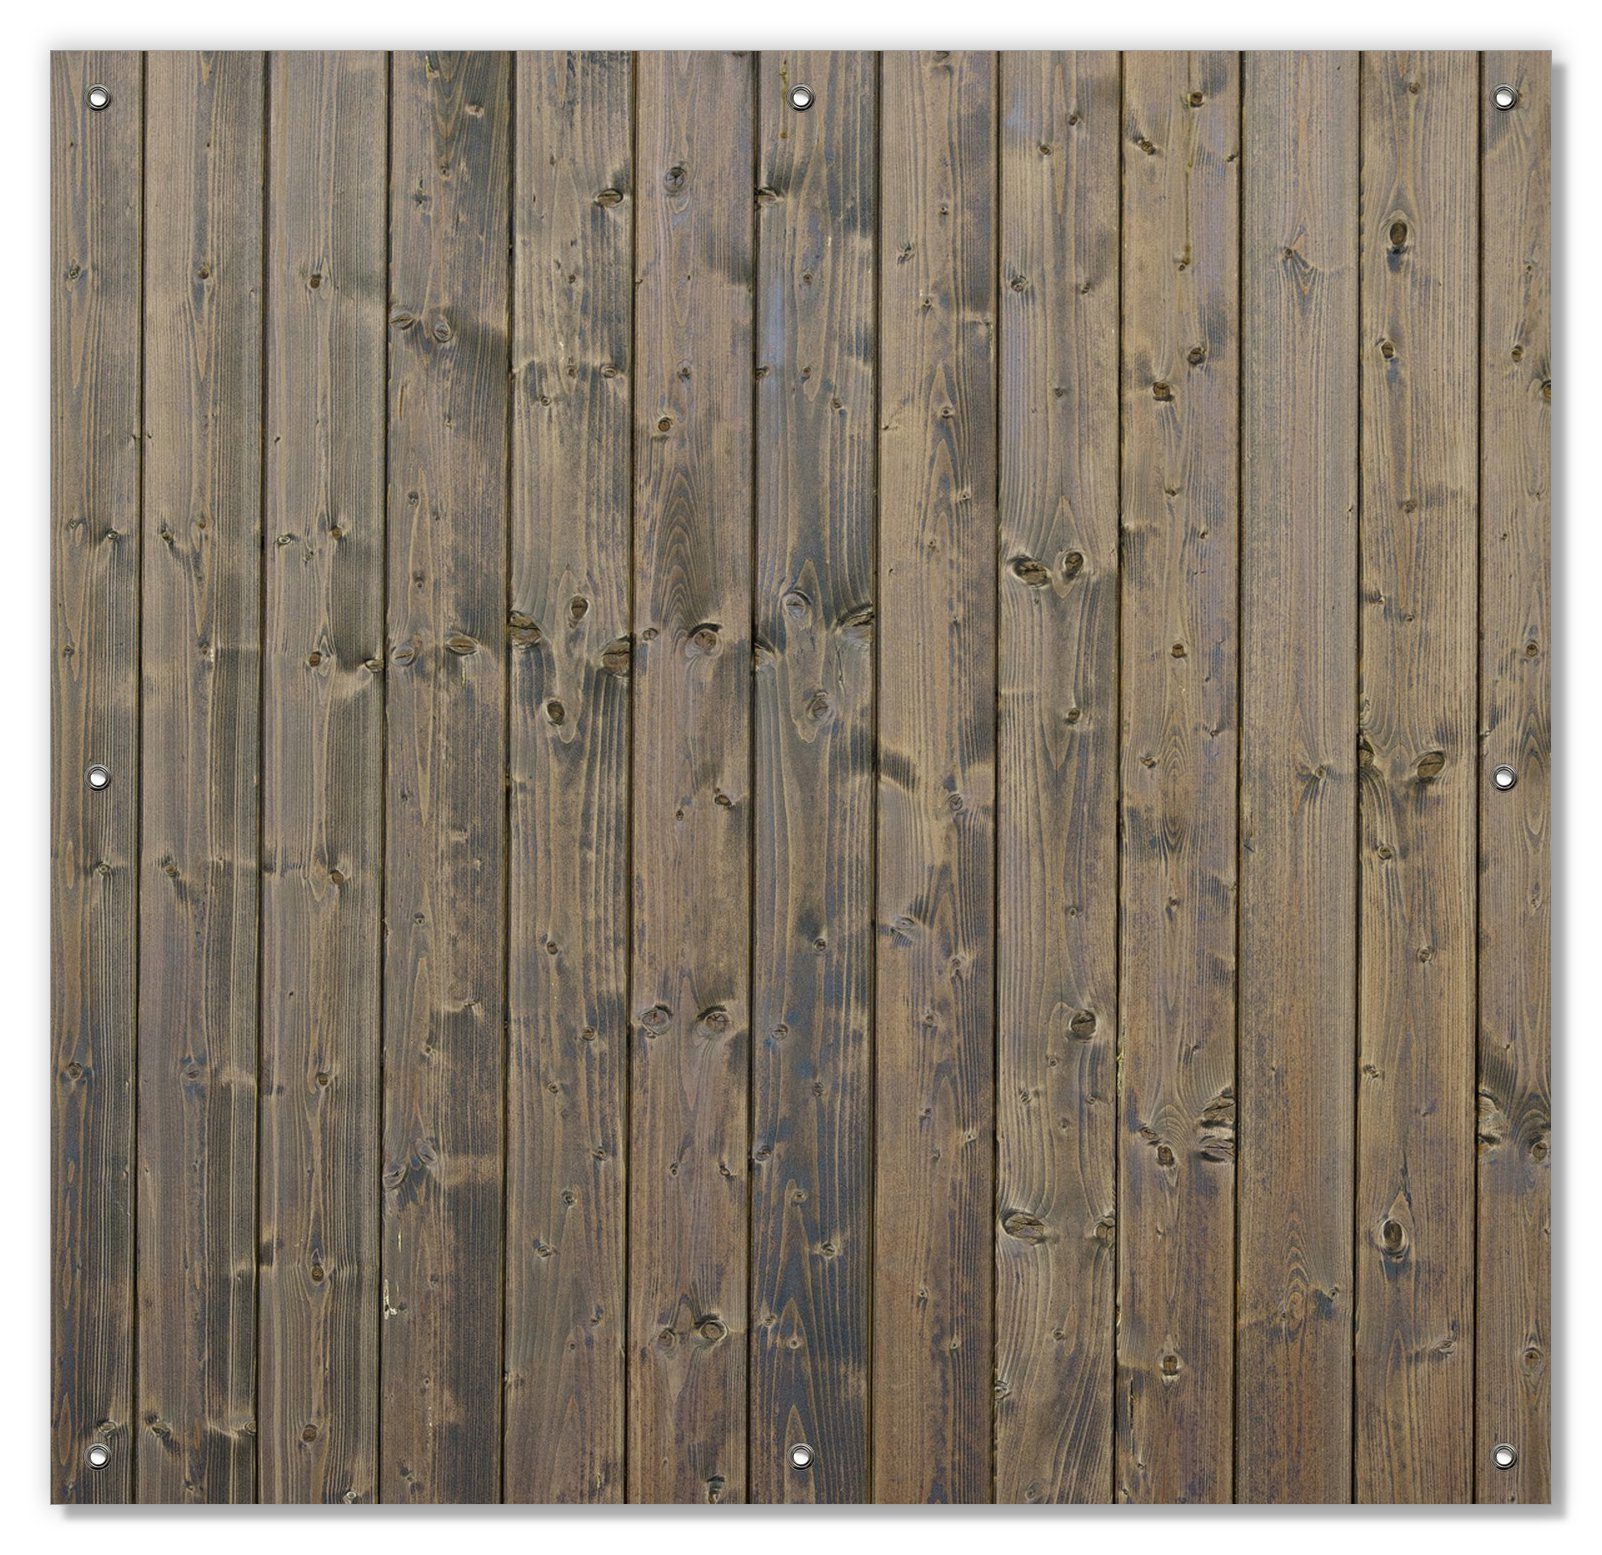 Sonnenschutz Holzpaneelen in grau braun - Holzmuster mit Maserung, Wallario, blickdicht, mit Saugnäpfen, wiederablösbar und wiederverwendbar